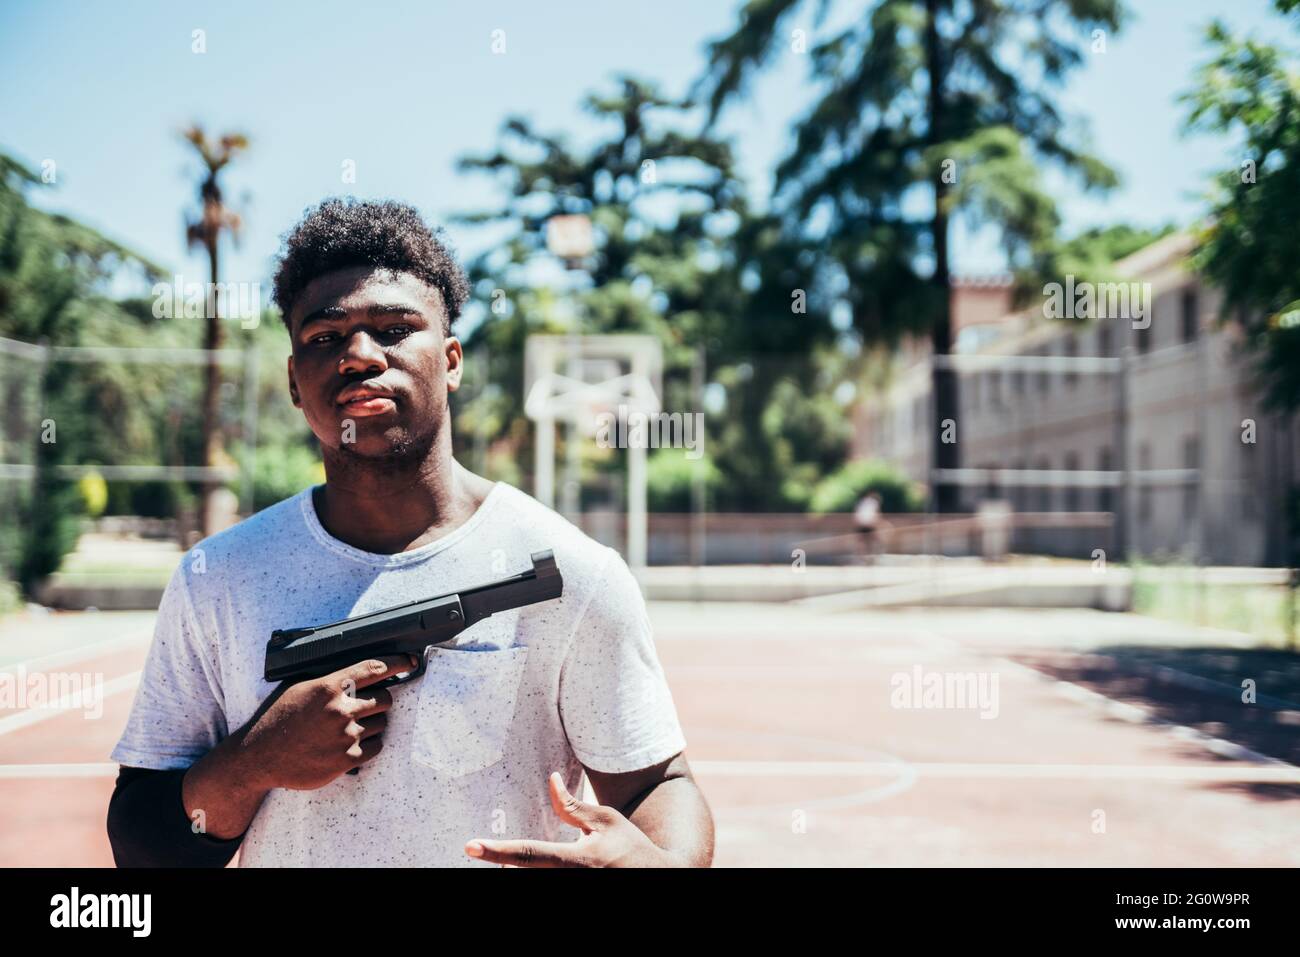 Schwarzer afroamerikanischer Junge, der eine Waffe auf einem städtischen Basketballplatz hält. Stockfoto